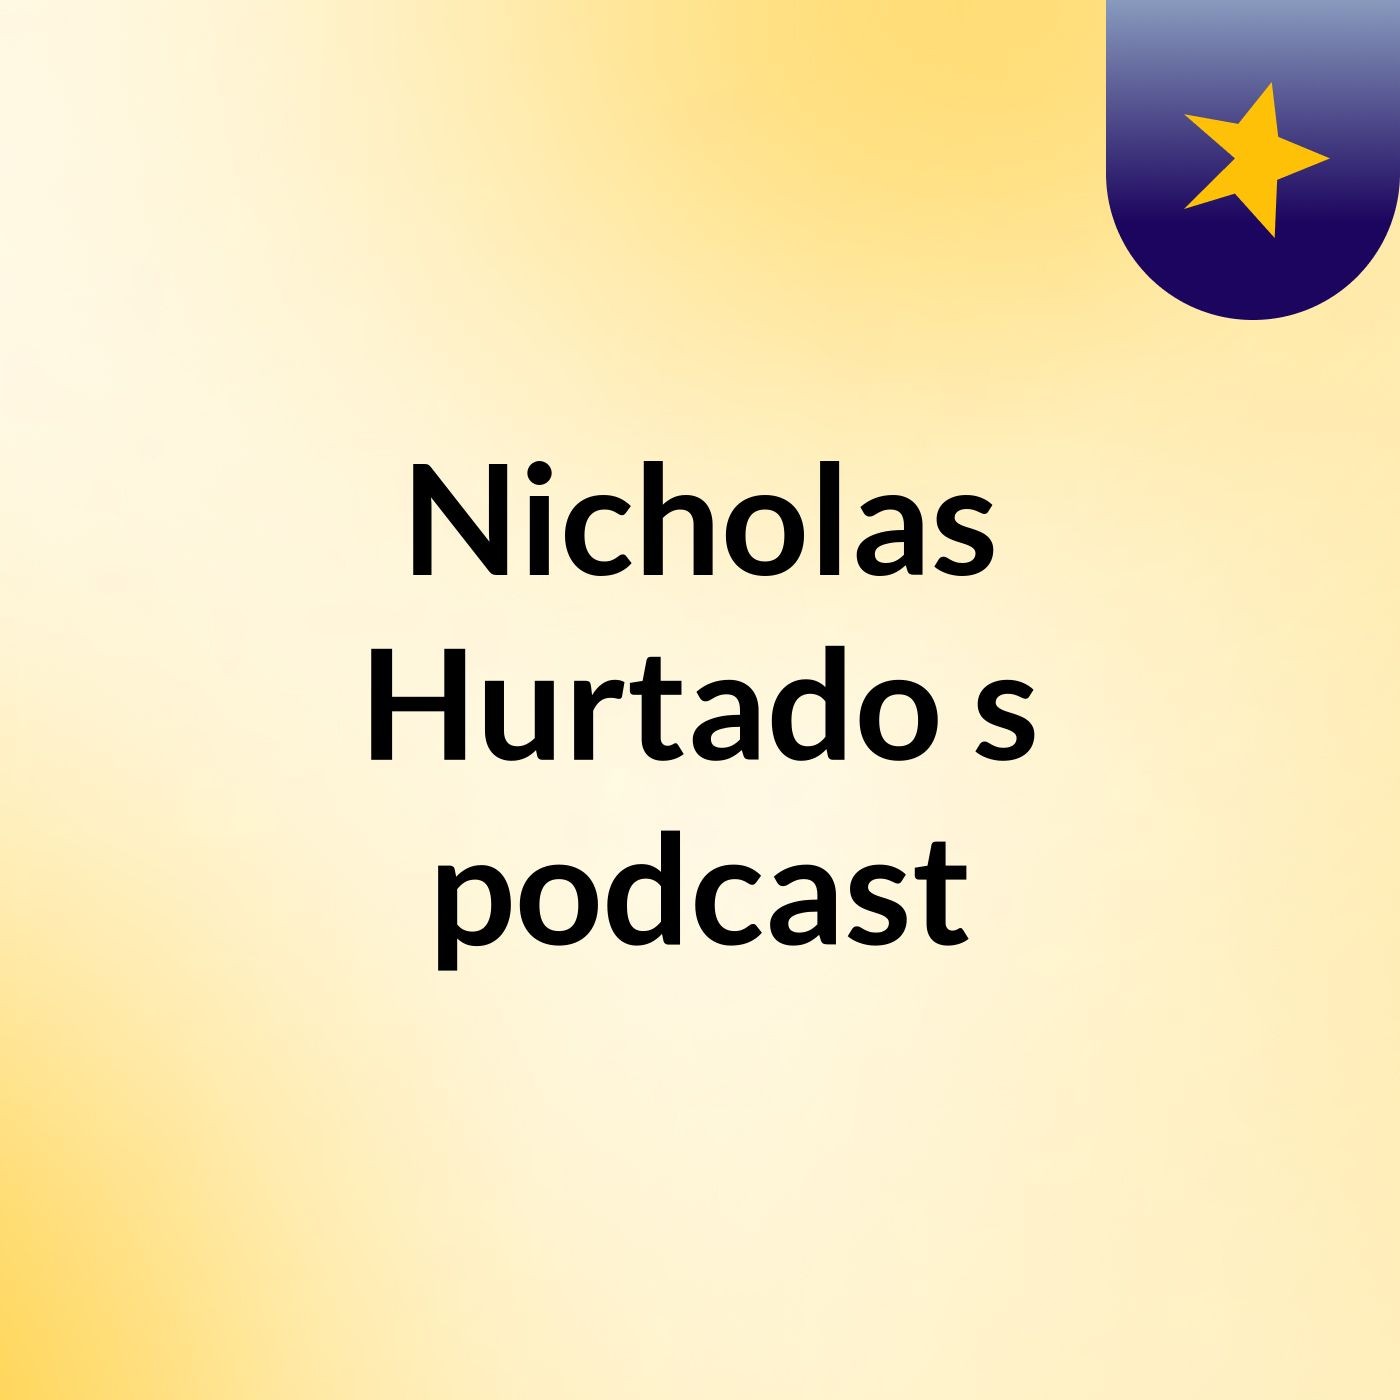 Nicholas Hurtado's podcast